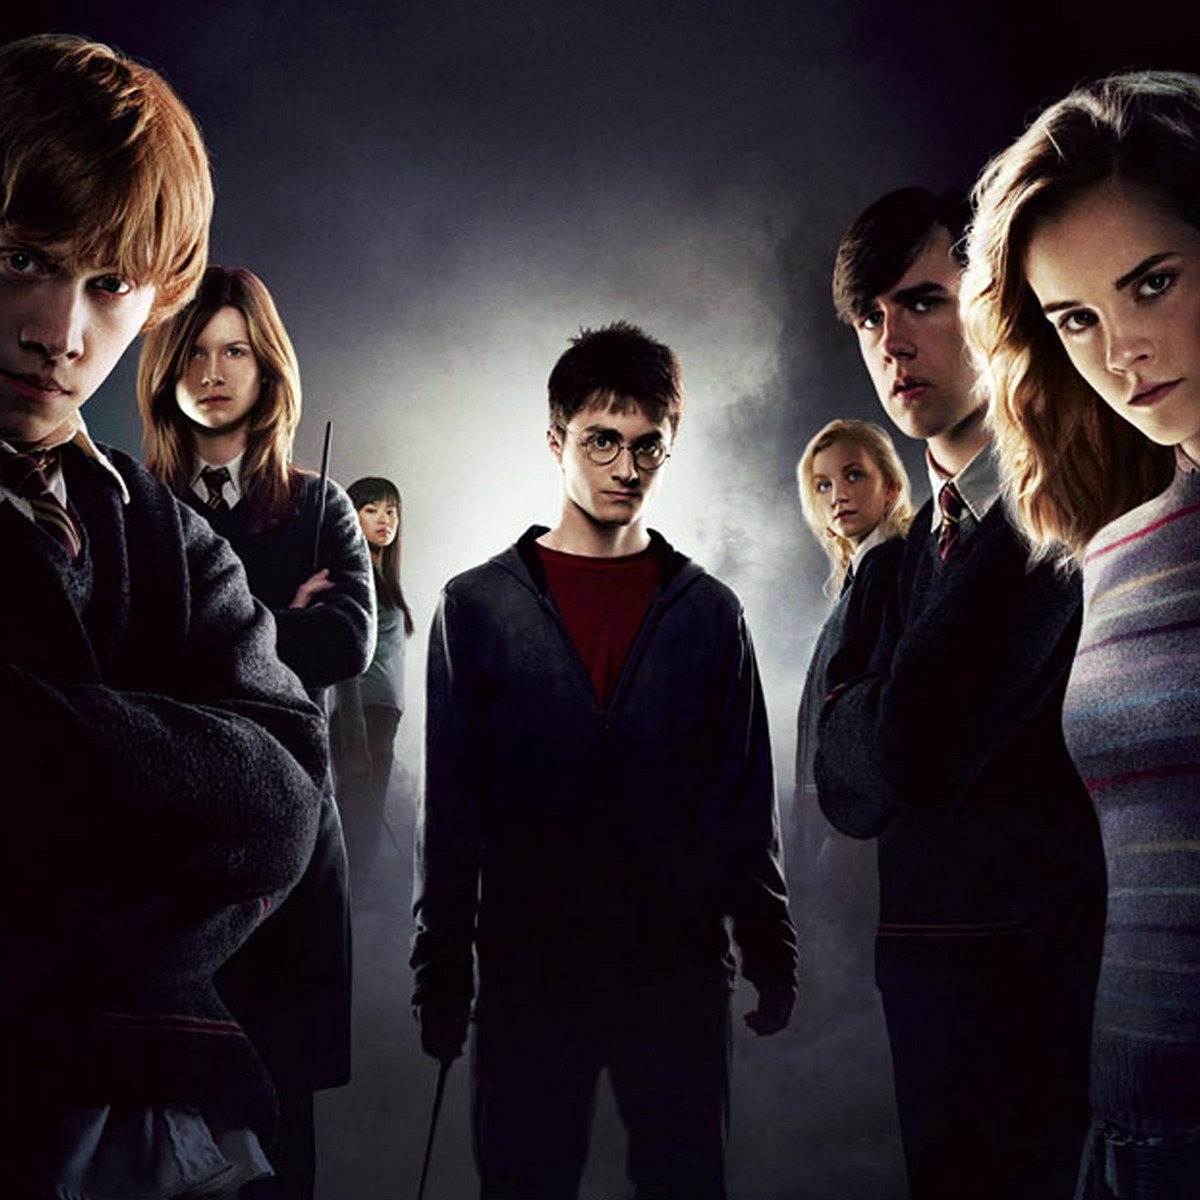 Um wen dreht sich wohl J.K. Rowlings neustes Harry Potter-Secret?